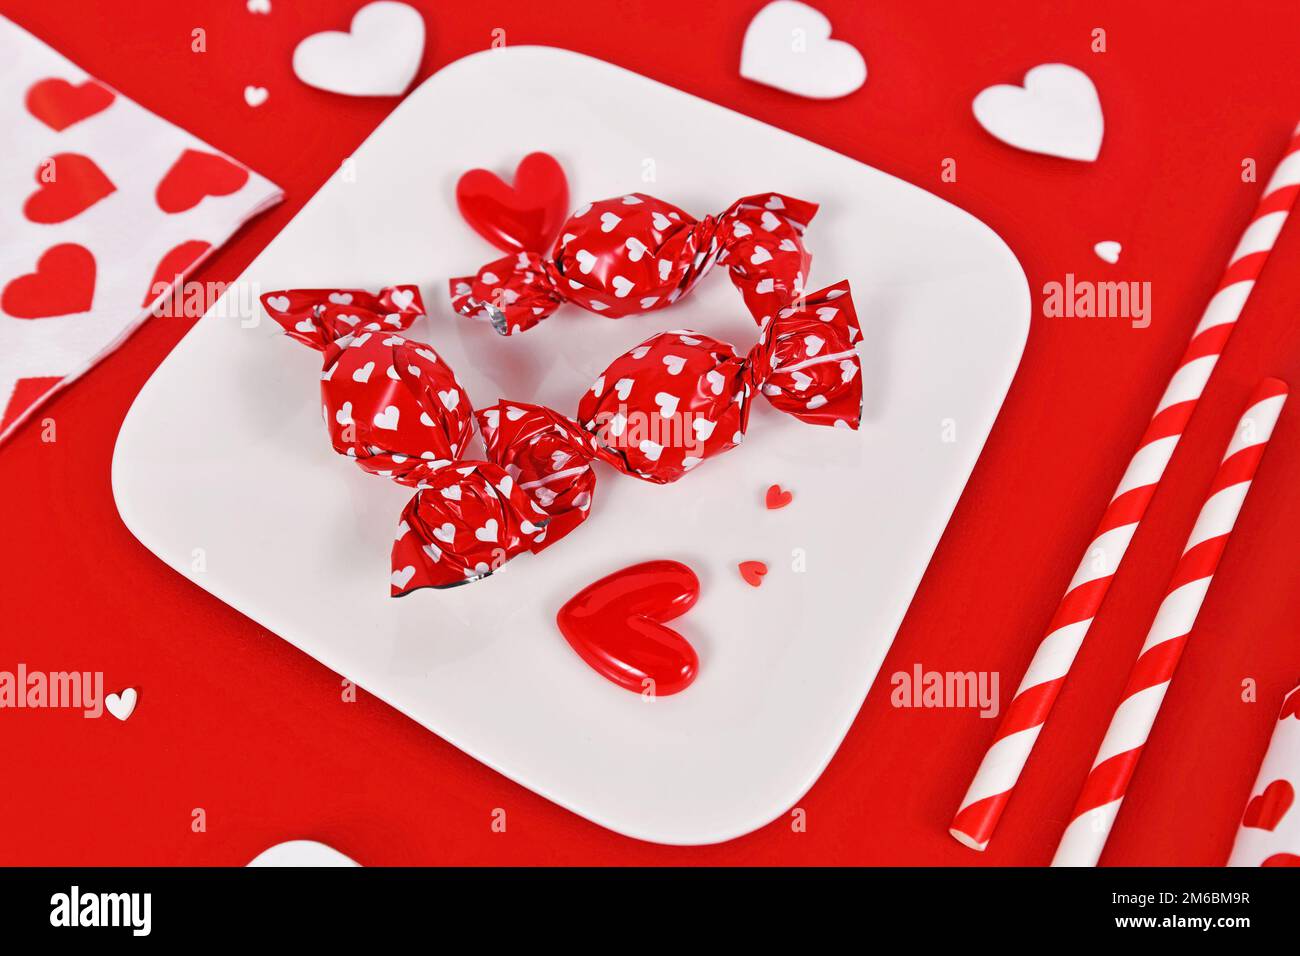 Friandises rouges de la Saint-Valentin avec emballage avec coeurs sur l'assiette entourée de décorations saisonnières Banque D'Images